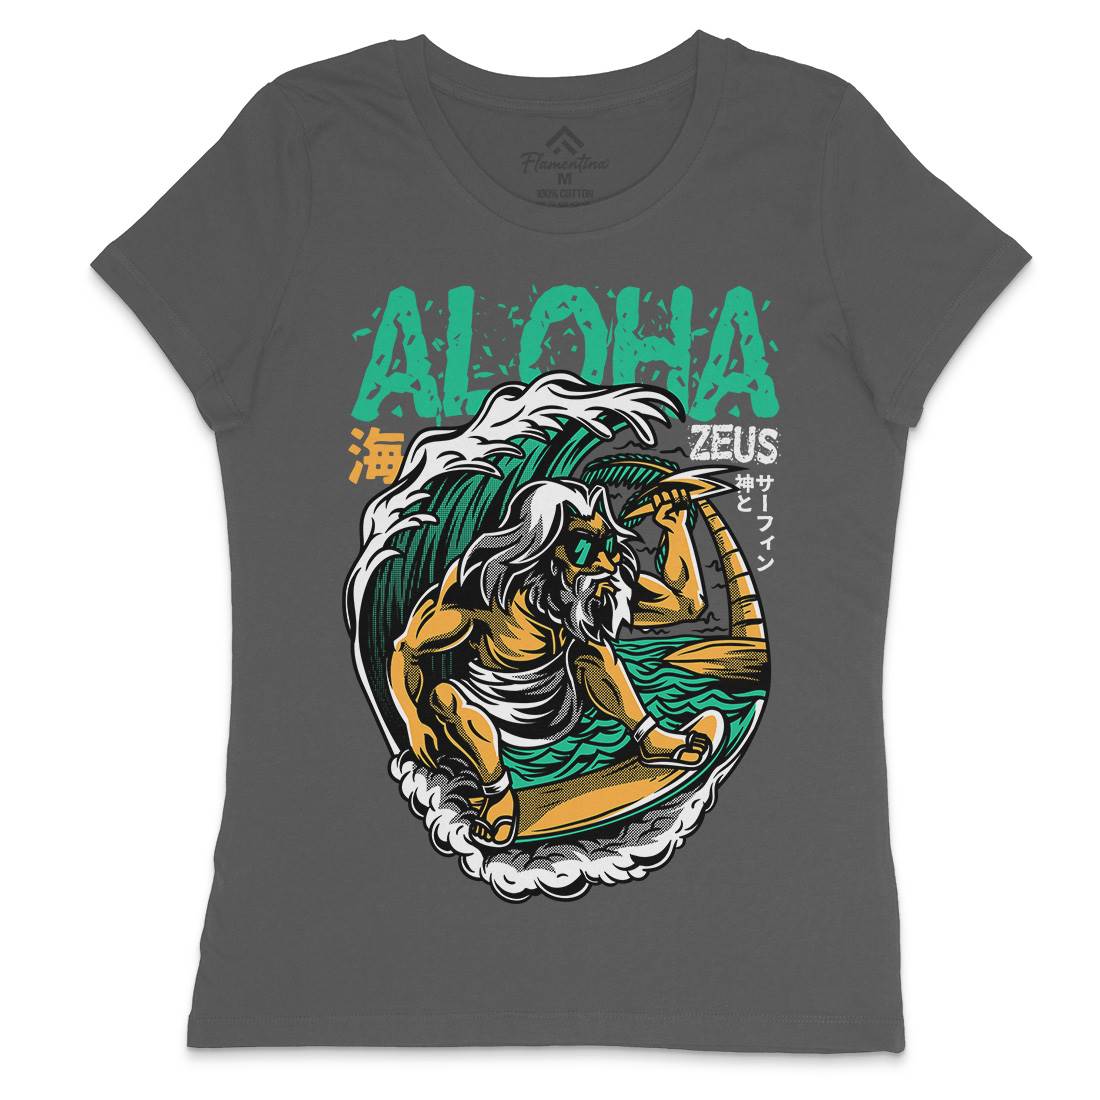 Aloha Zeus Womens Crew Neck T-Shirt Surf D703